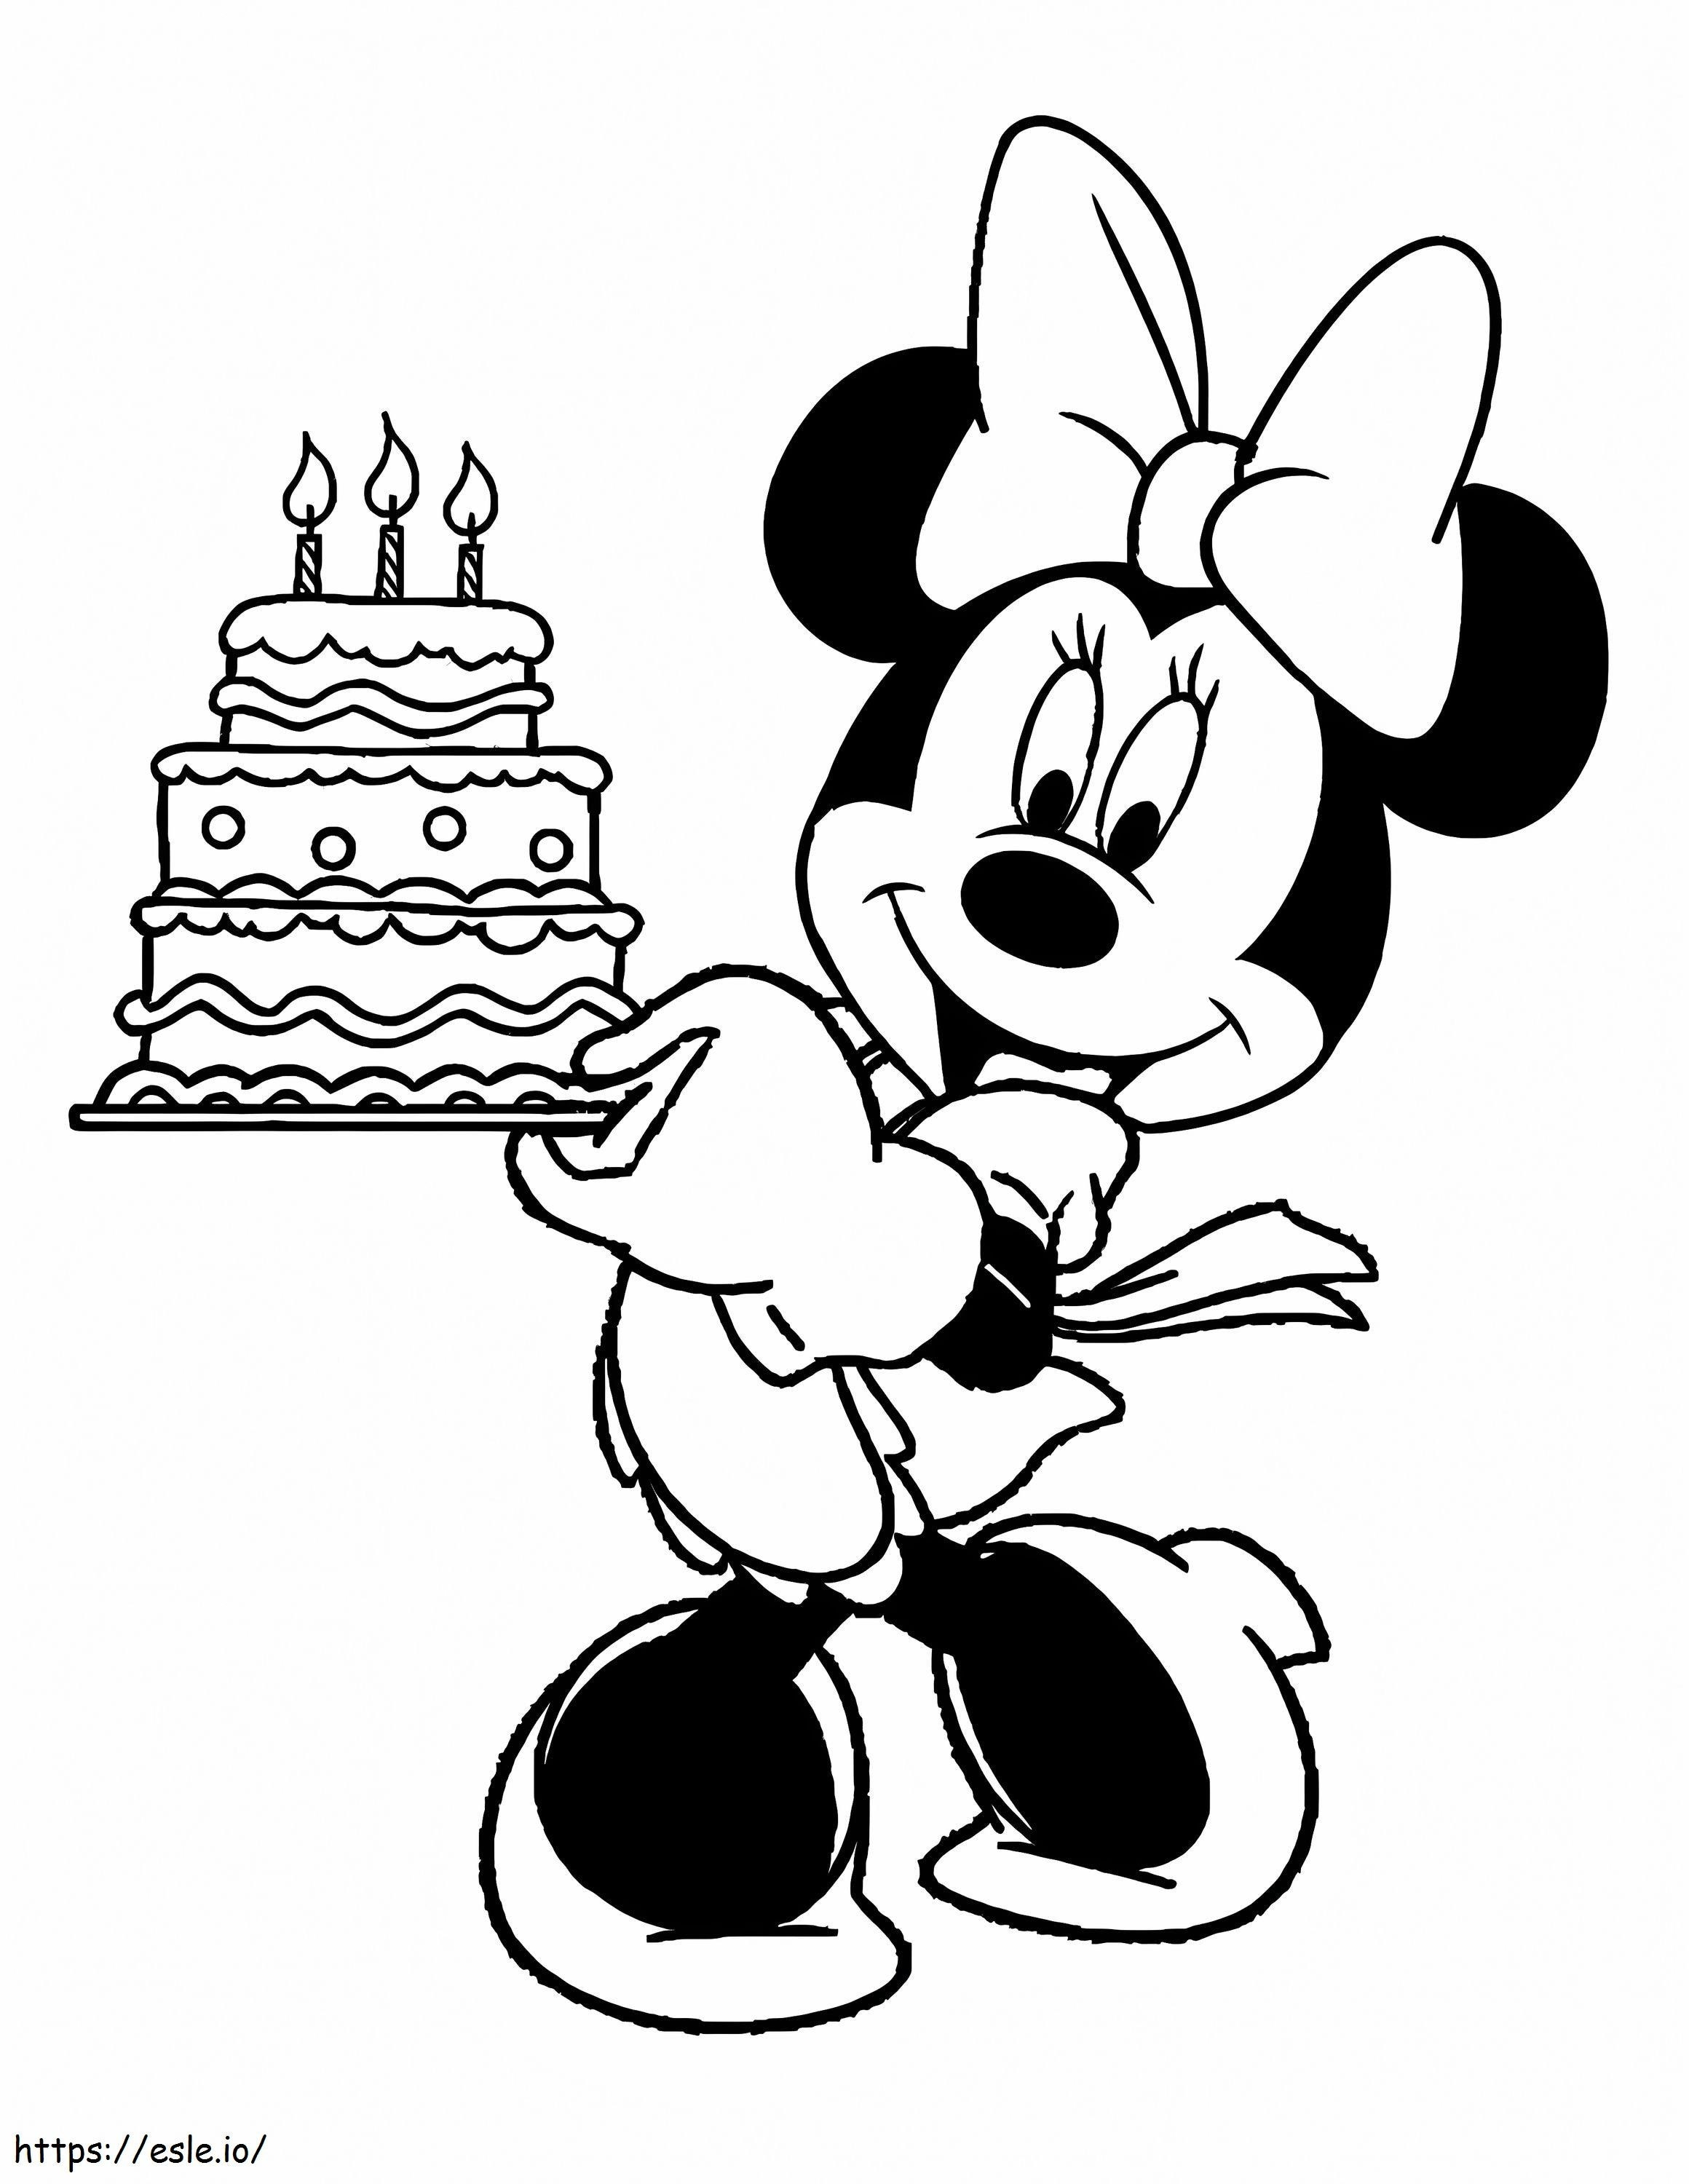 Divertente Minnie Mouse con torta di compleanno da colorare